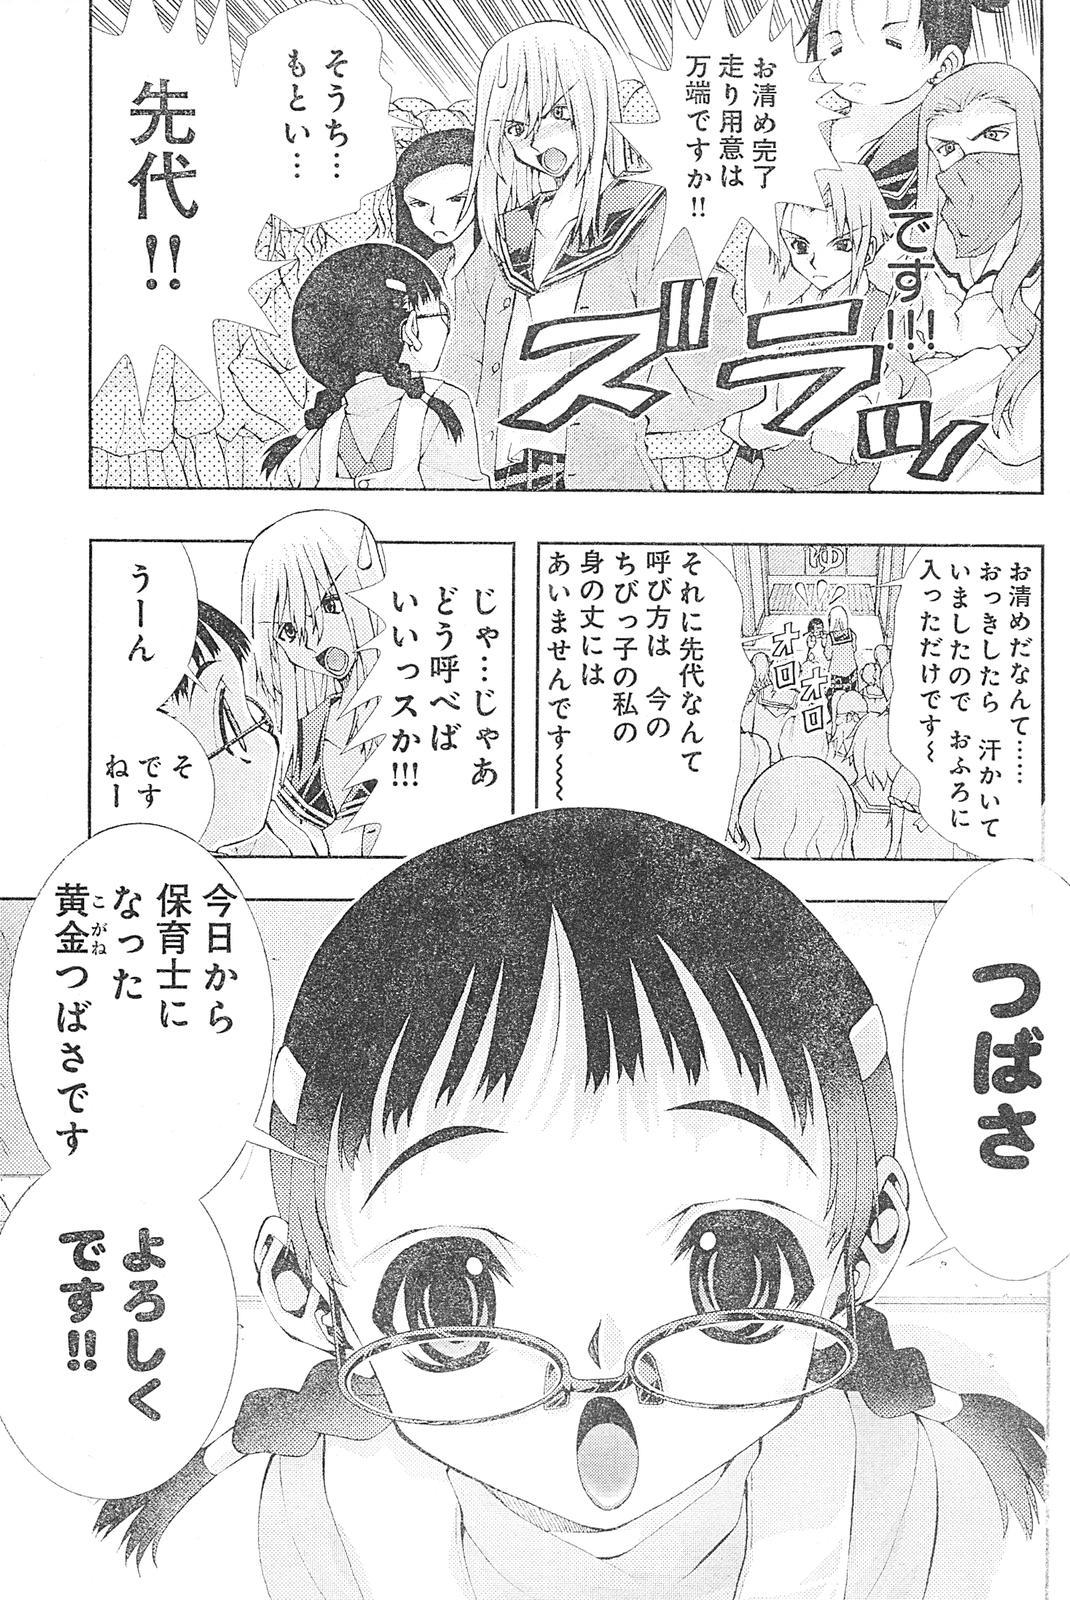 Kinky Yan hobo by matsuyama seiji Woman - Page 3